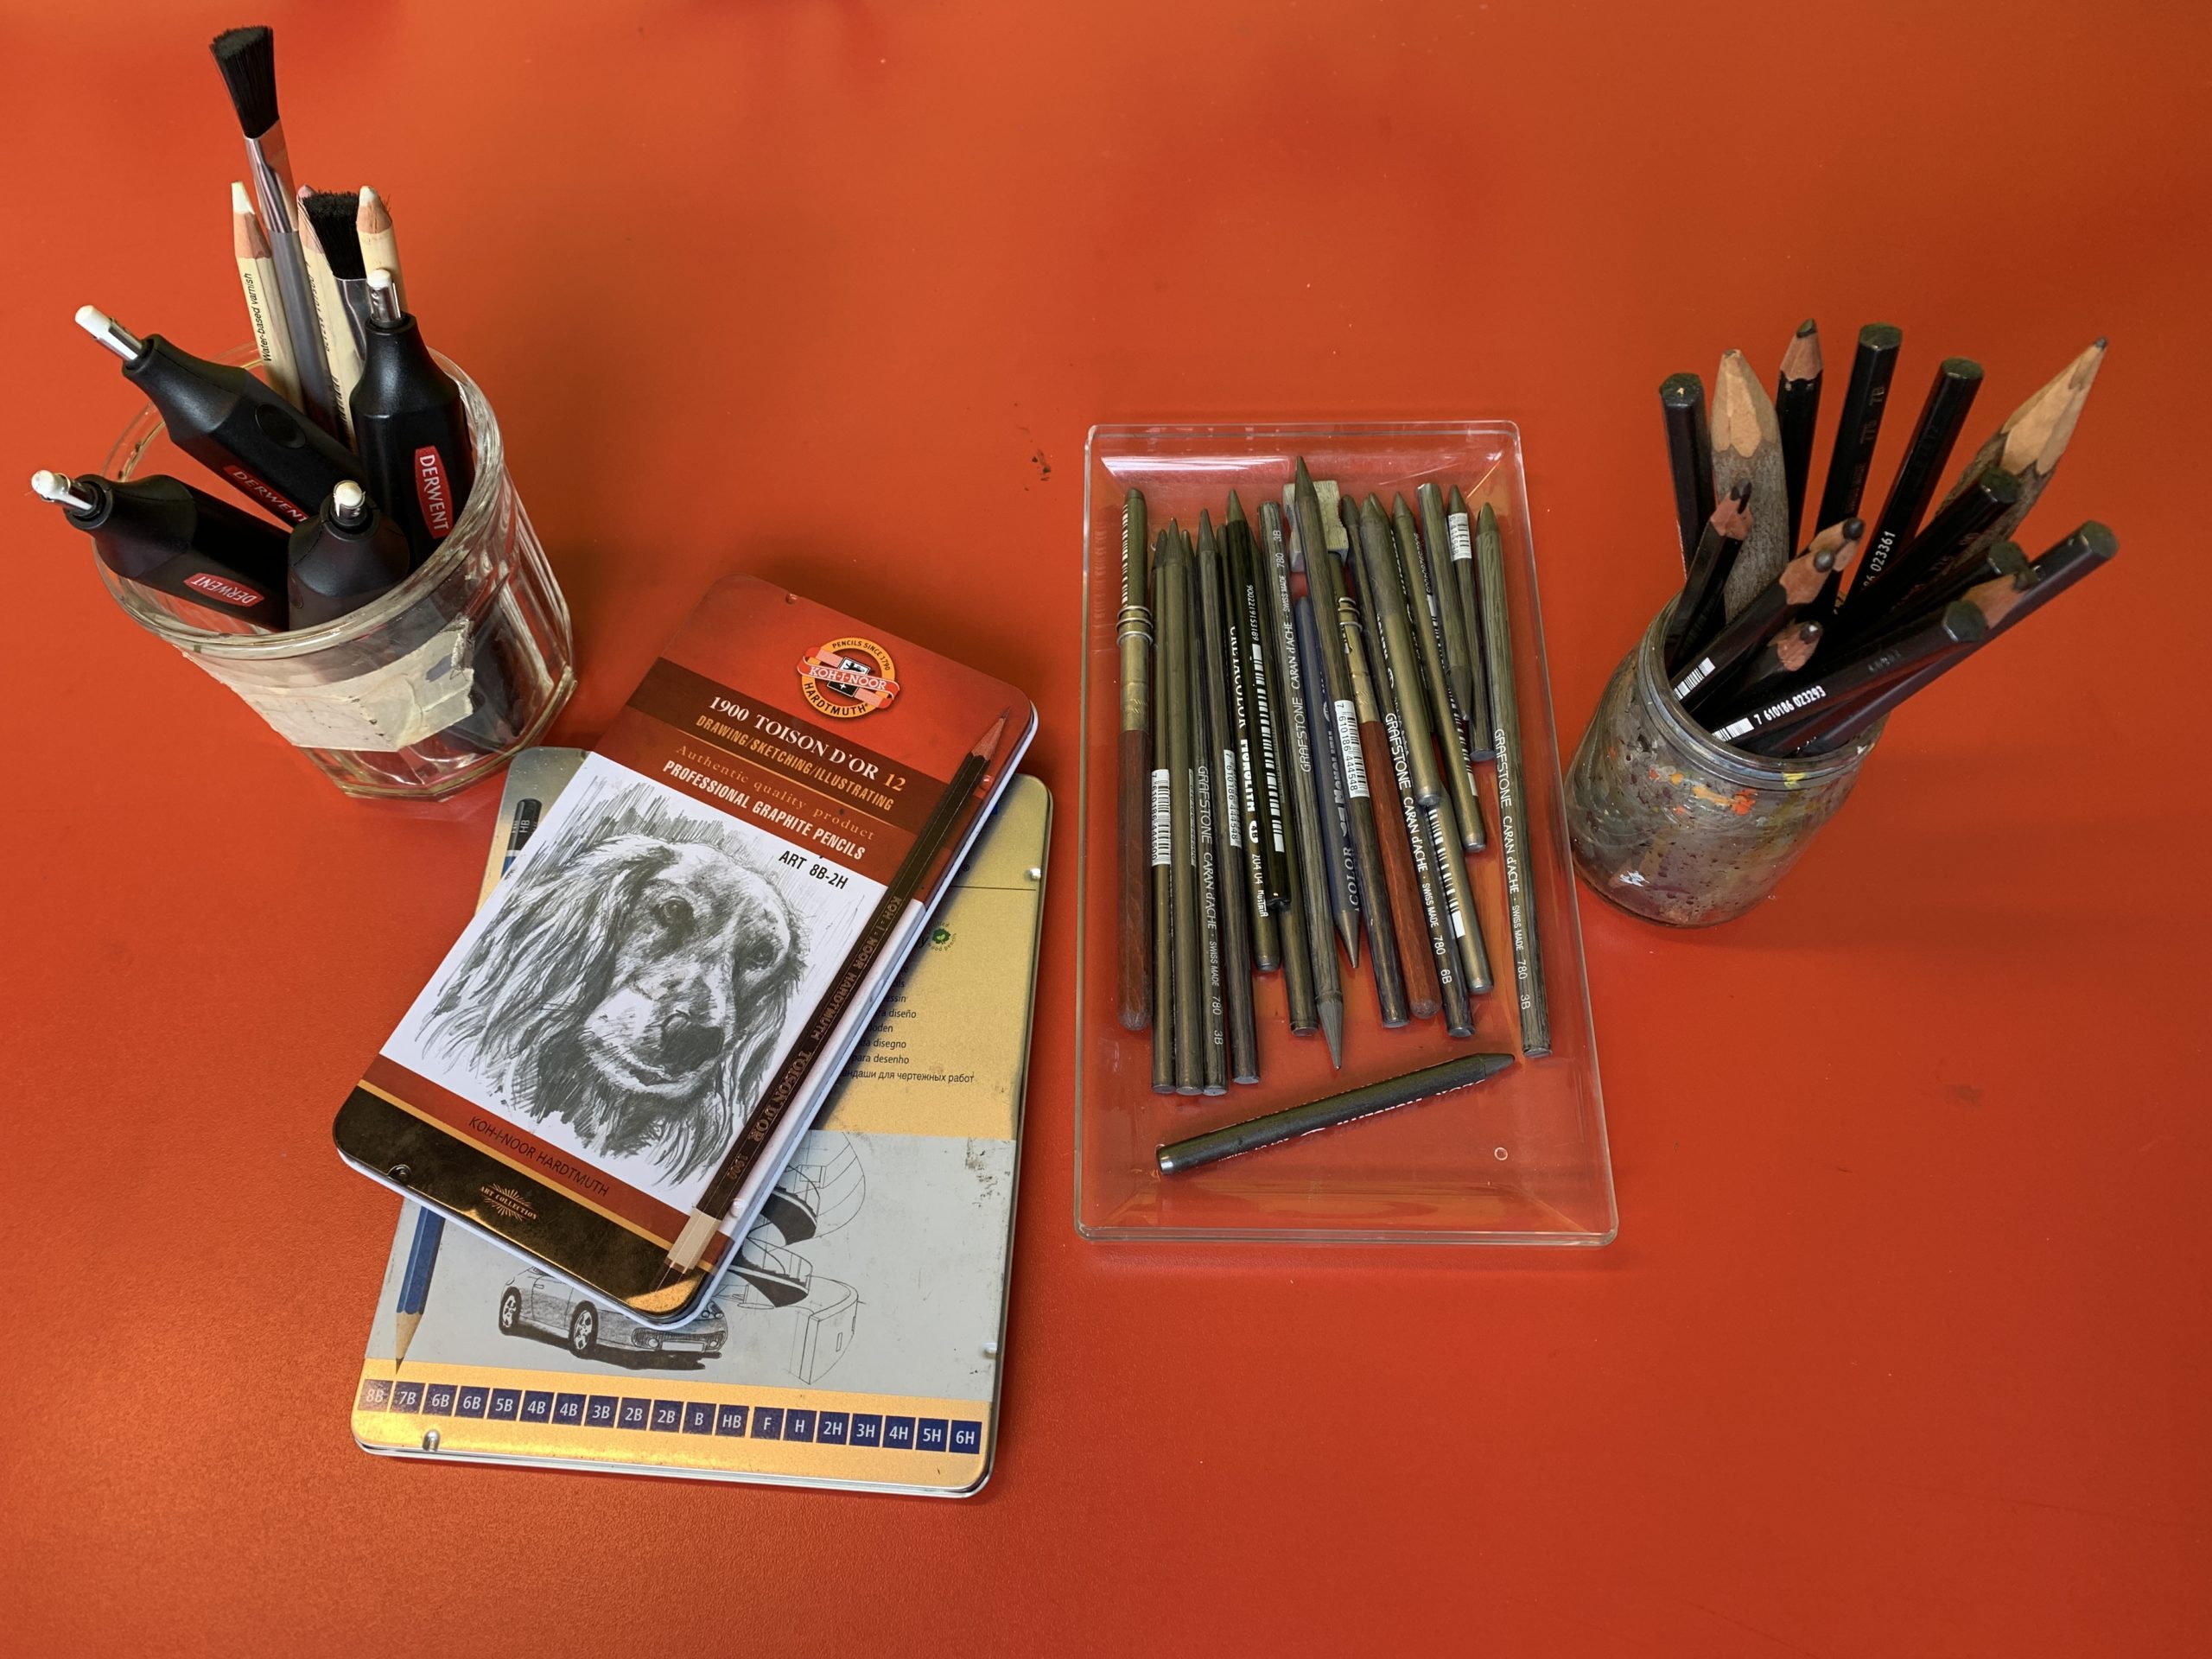 Matériel : Le dessin au crayon graphite - Plaisir du dessin